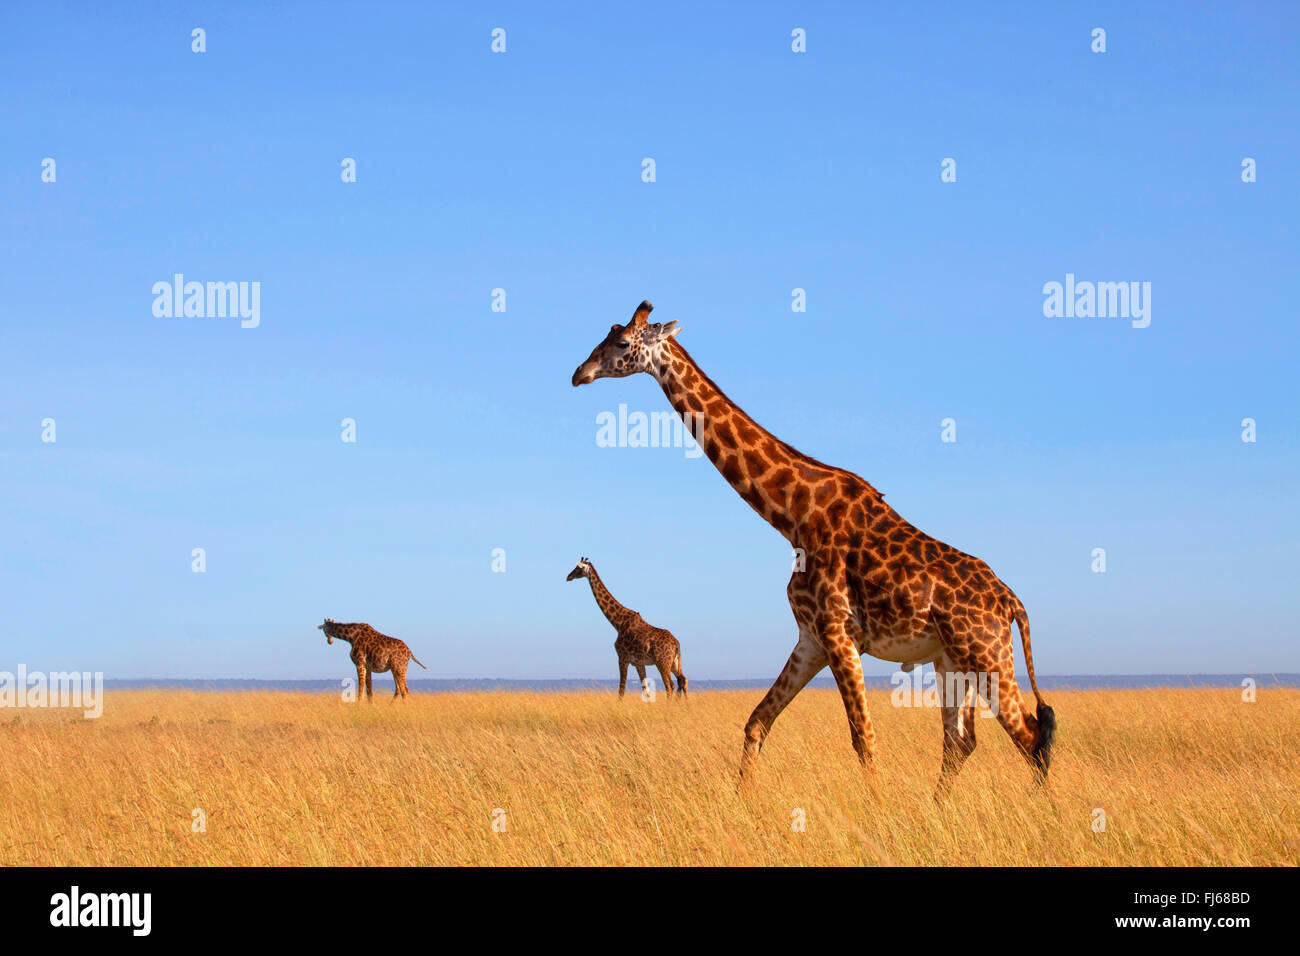 Masai giraffe (Giraffa camelopardalis tippelskirchi), three giraffes in savannah, Kenya, Masai Mara National Park Stock Photo